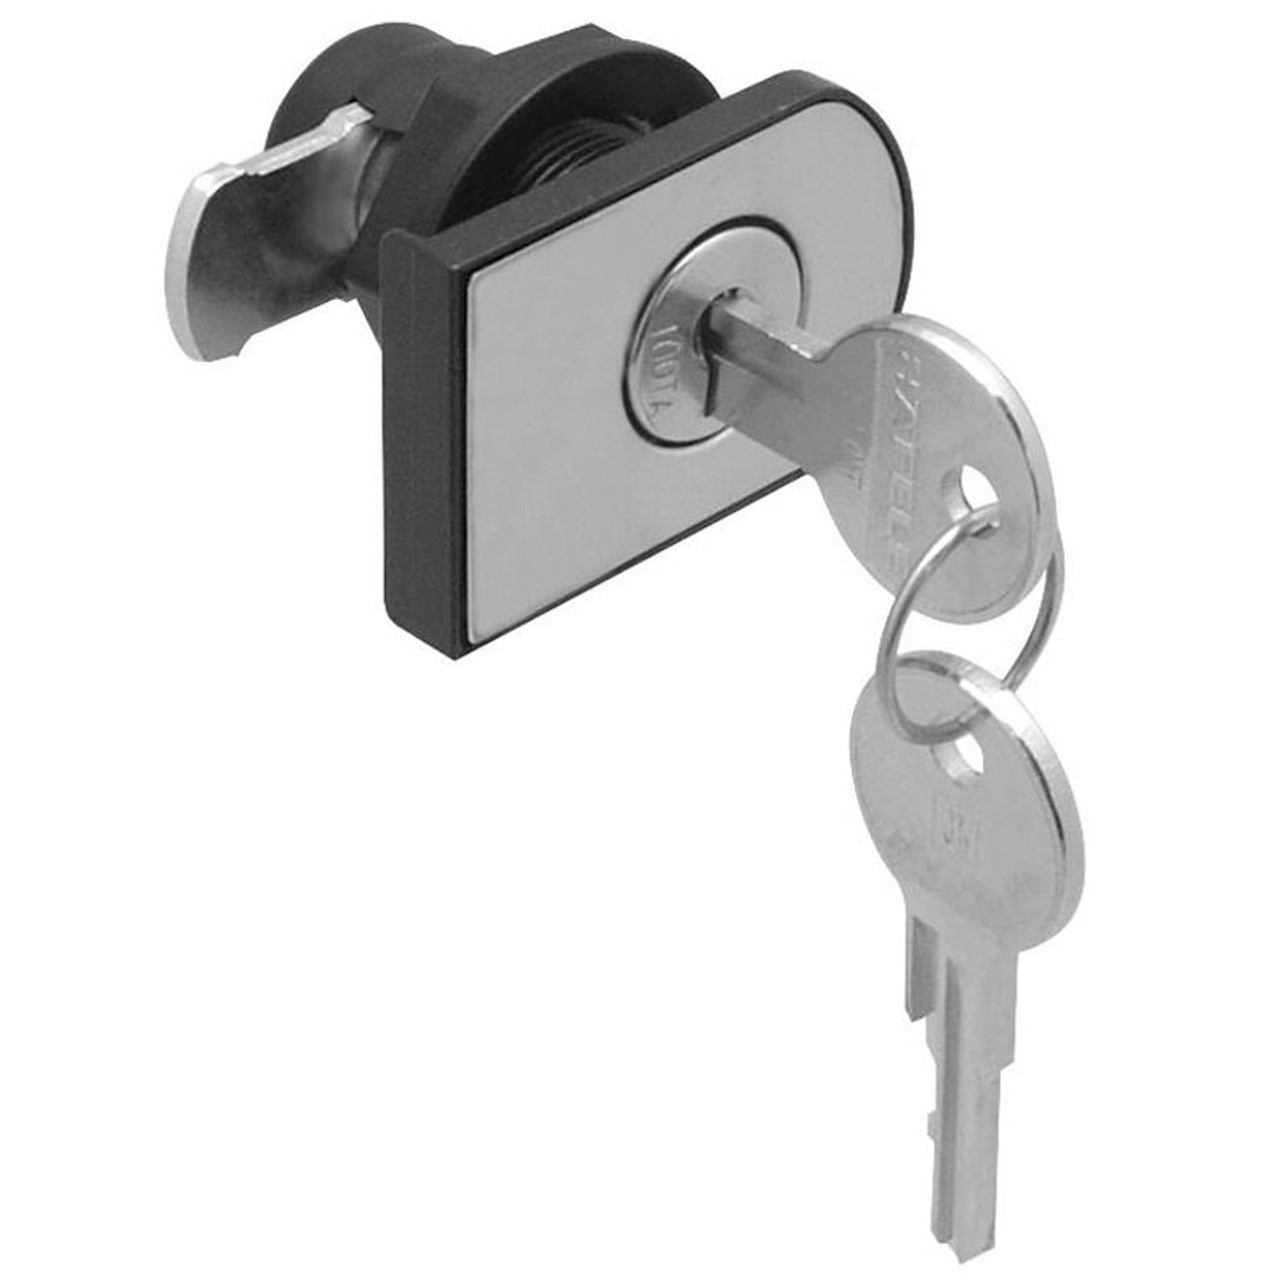 Roblox Doors - Door Lock Prop - New - Made in USA